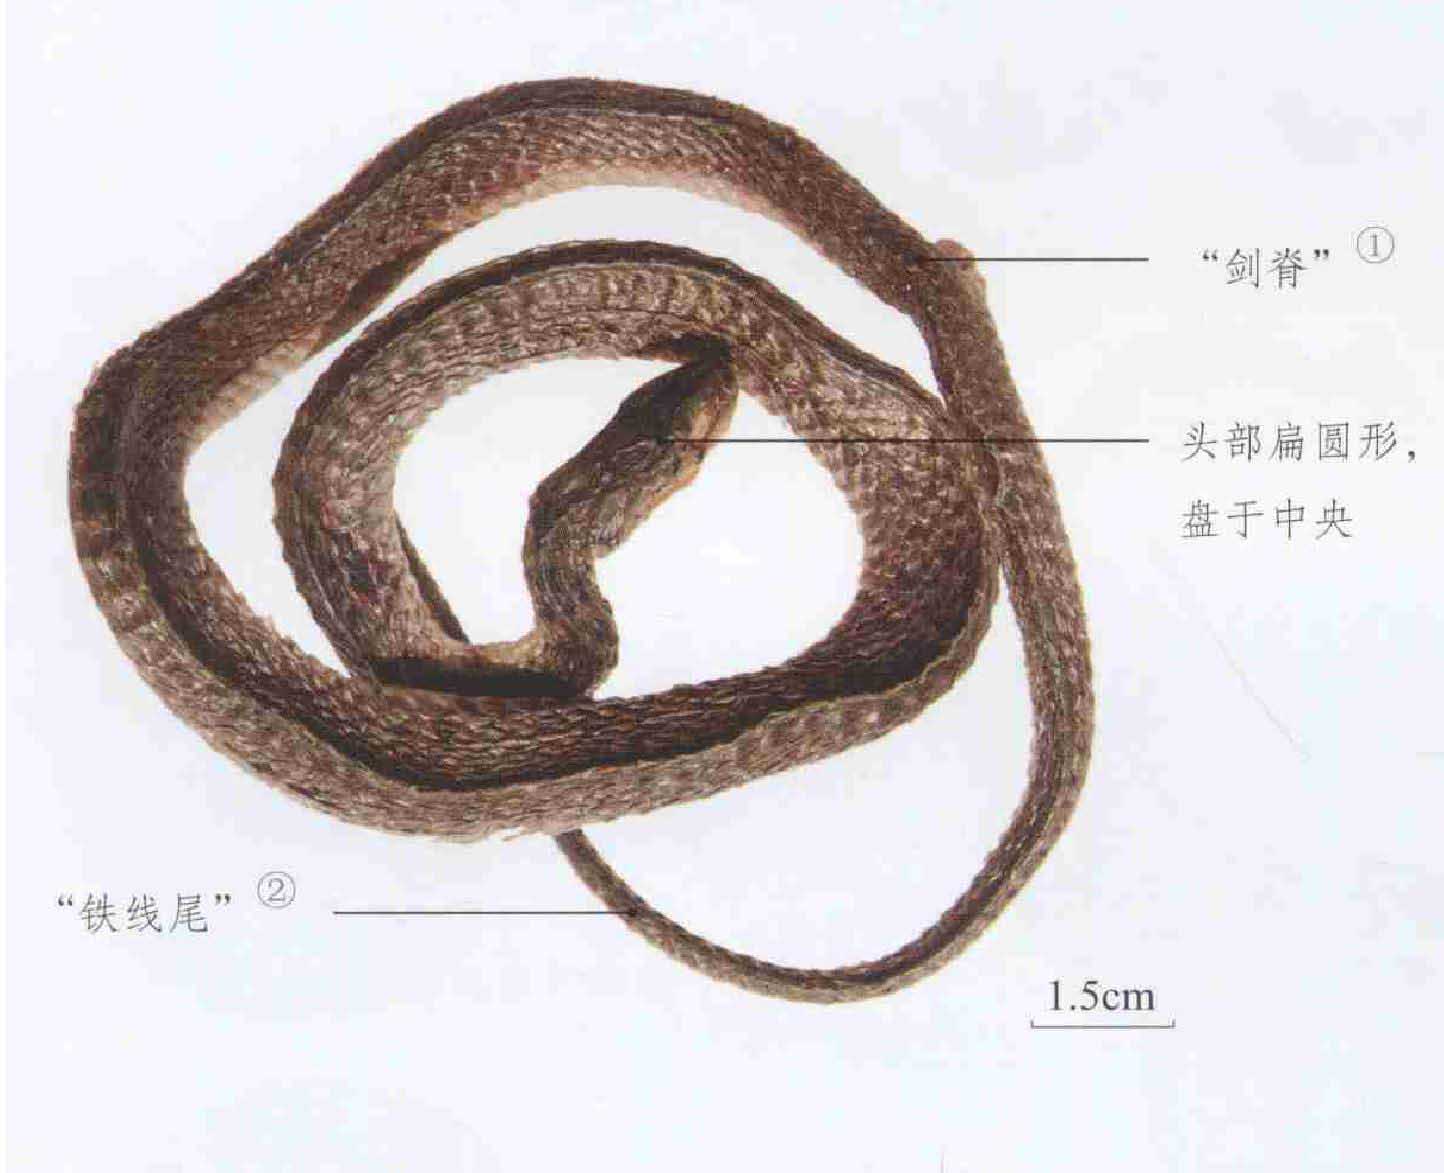 乌梢蛇-云南野生珍稀动物-图片